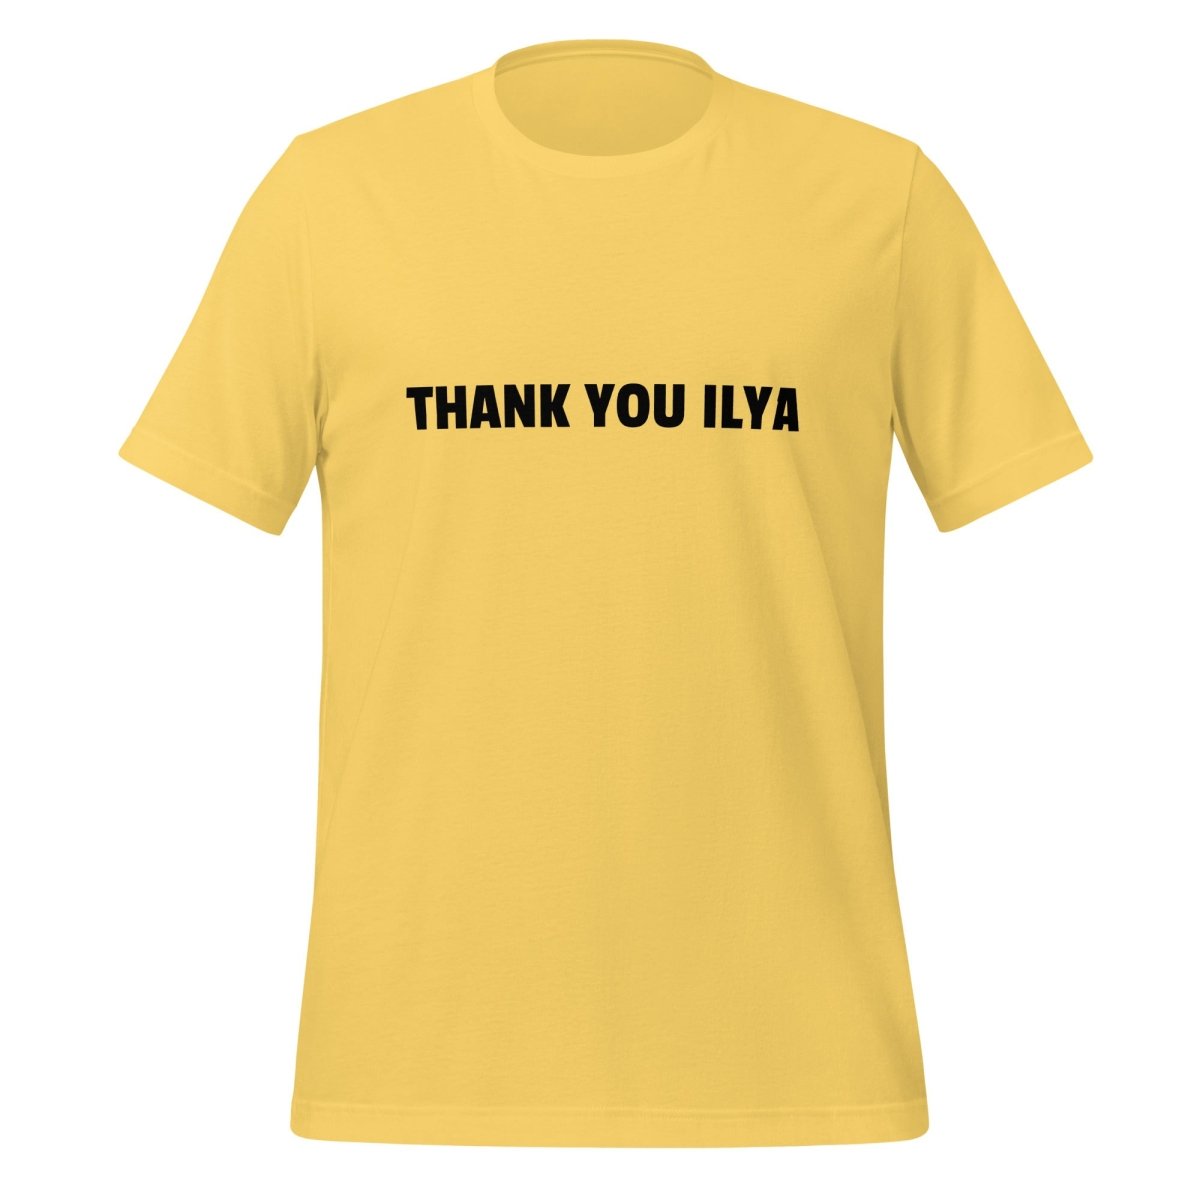 THANK YOU ILYA T - Shirt (unisex) - Yellow - AI Store